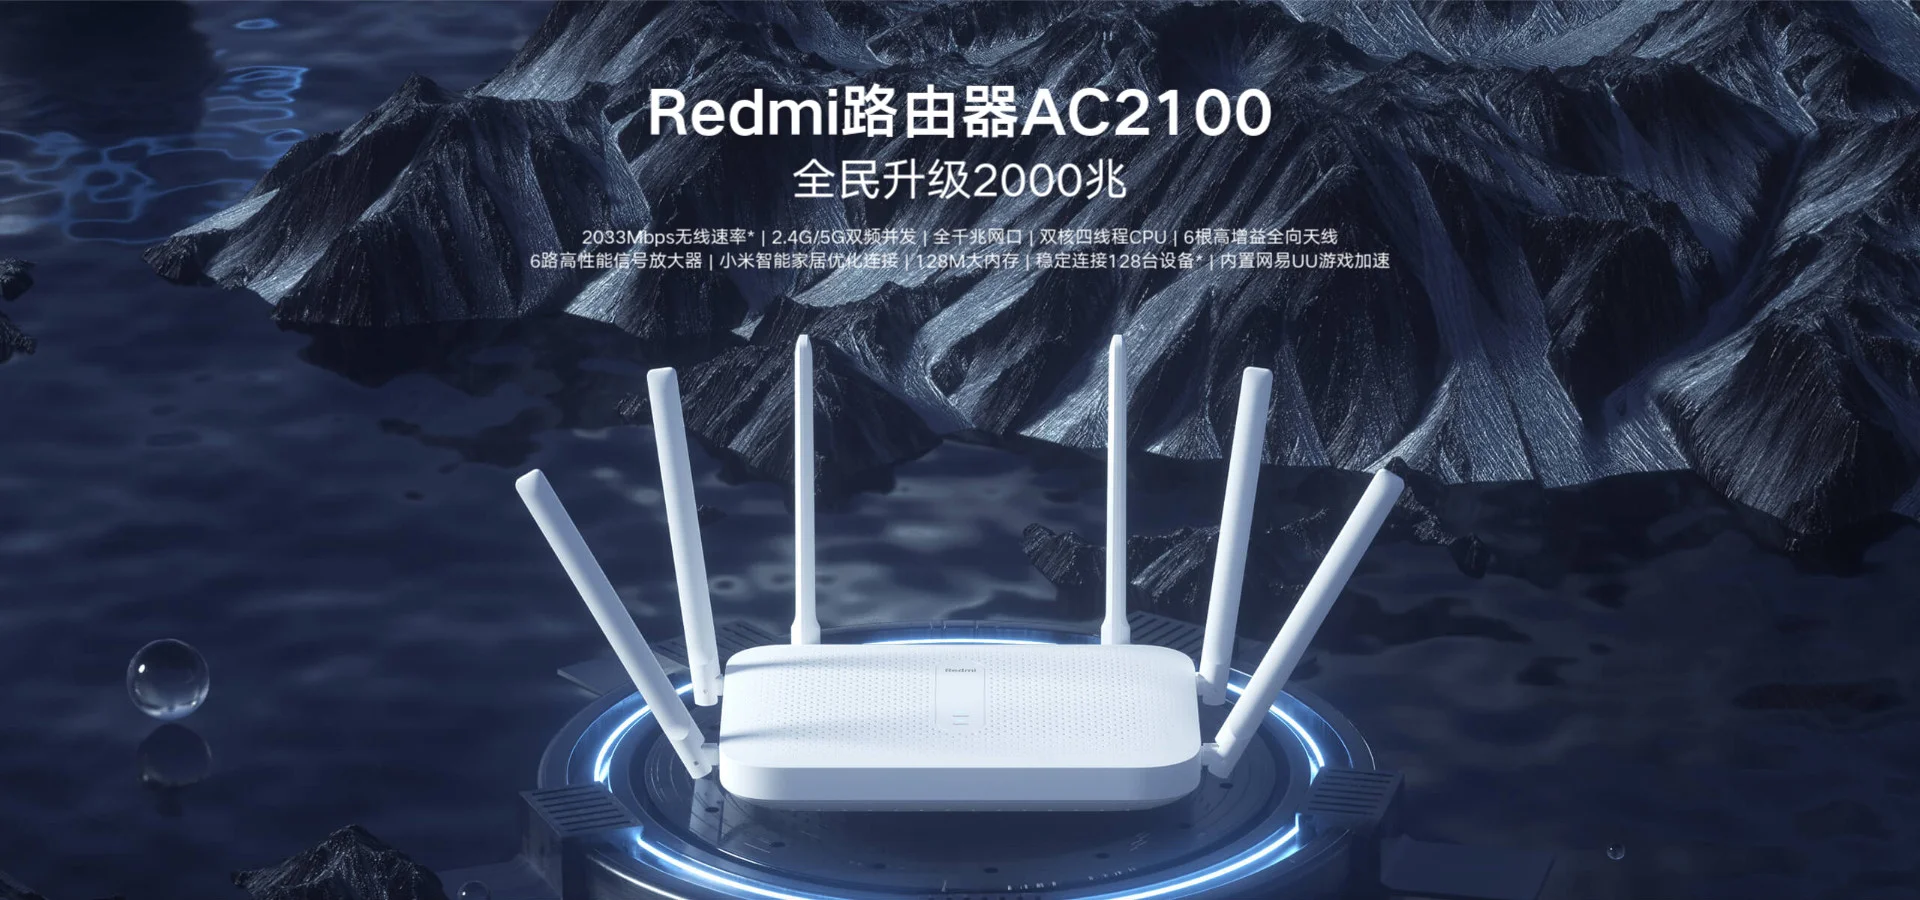 Redmi Router AC2100